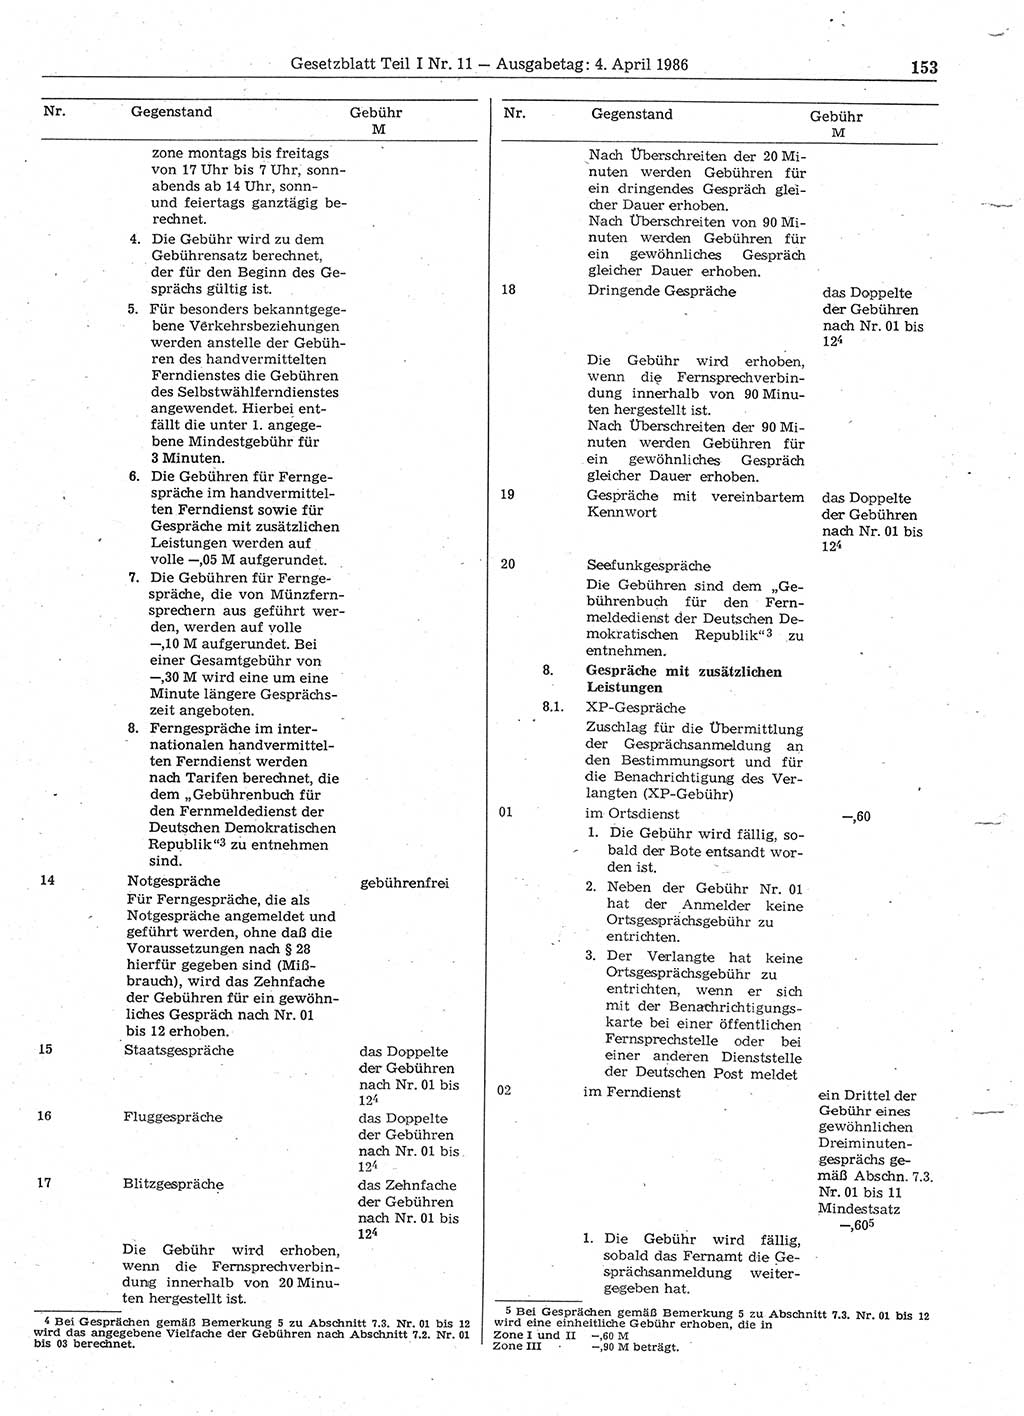 Gesetzblatt (GBl.) der Deutschen Demokratischen Republik (DDR) Teil Ⅰ 1986, Seite 153 (GBl. DDR Ⅰ 1986, S. 153)